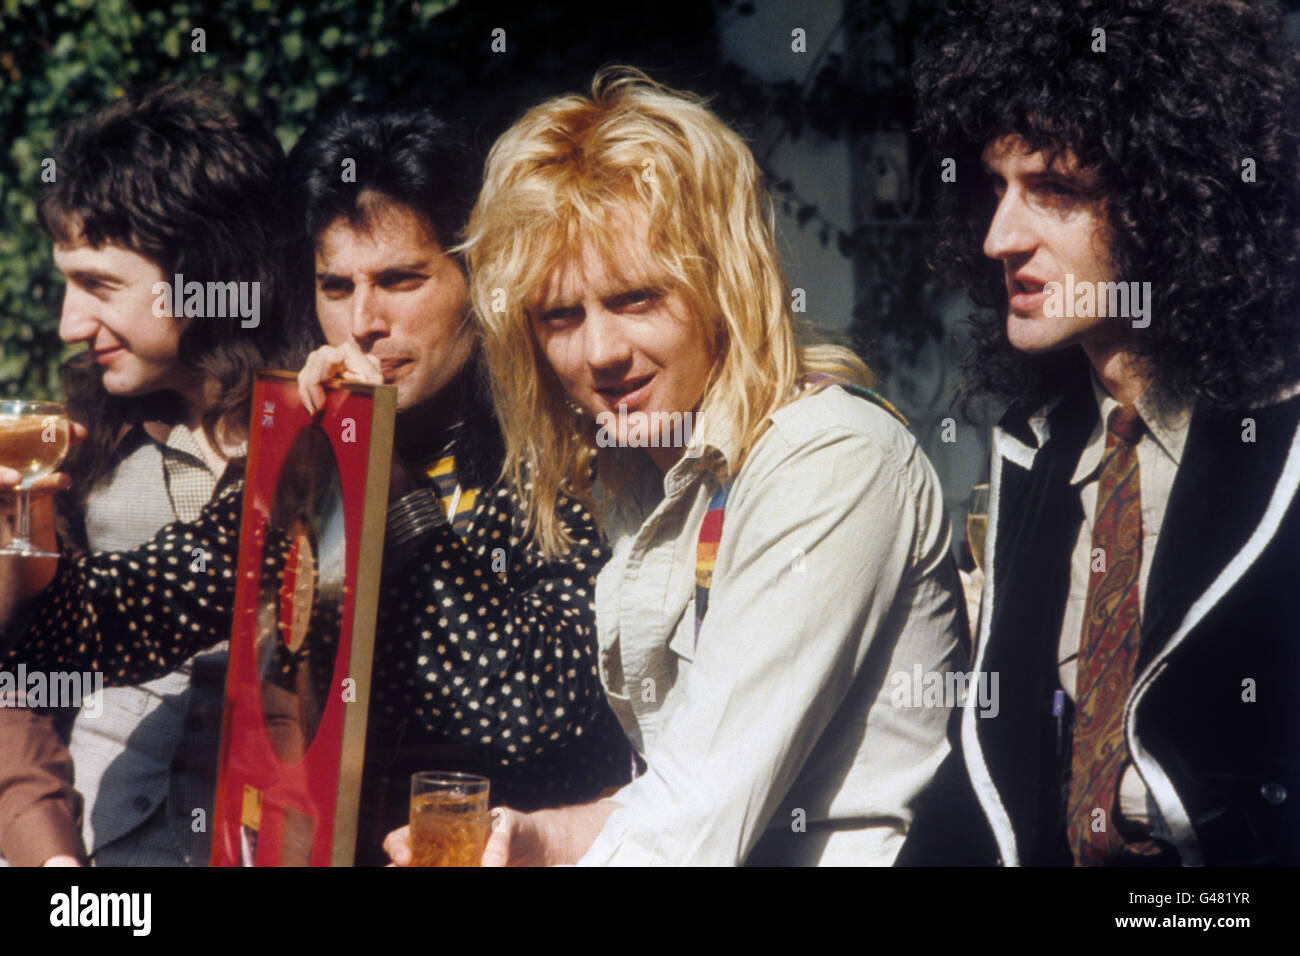 Le groupe de rock 'Queen' à Londres recevra un prix Platinum , Gold et Silver de l'Institut phonographique britannique pour ses ventes record. (l-r) John Deacon, Freddie Mercury, Roger Taylor et Brian May. Banque D'Images